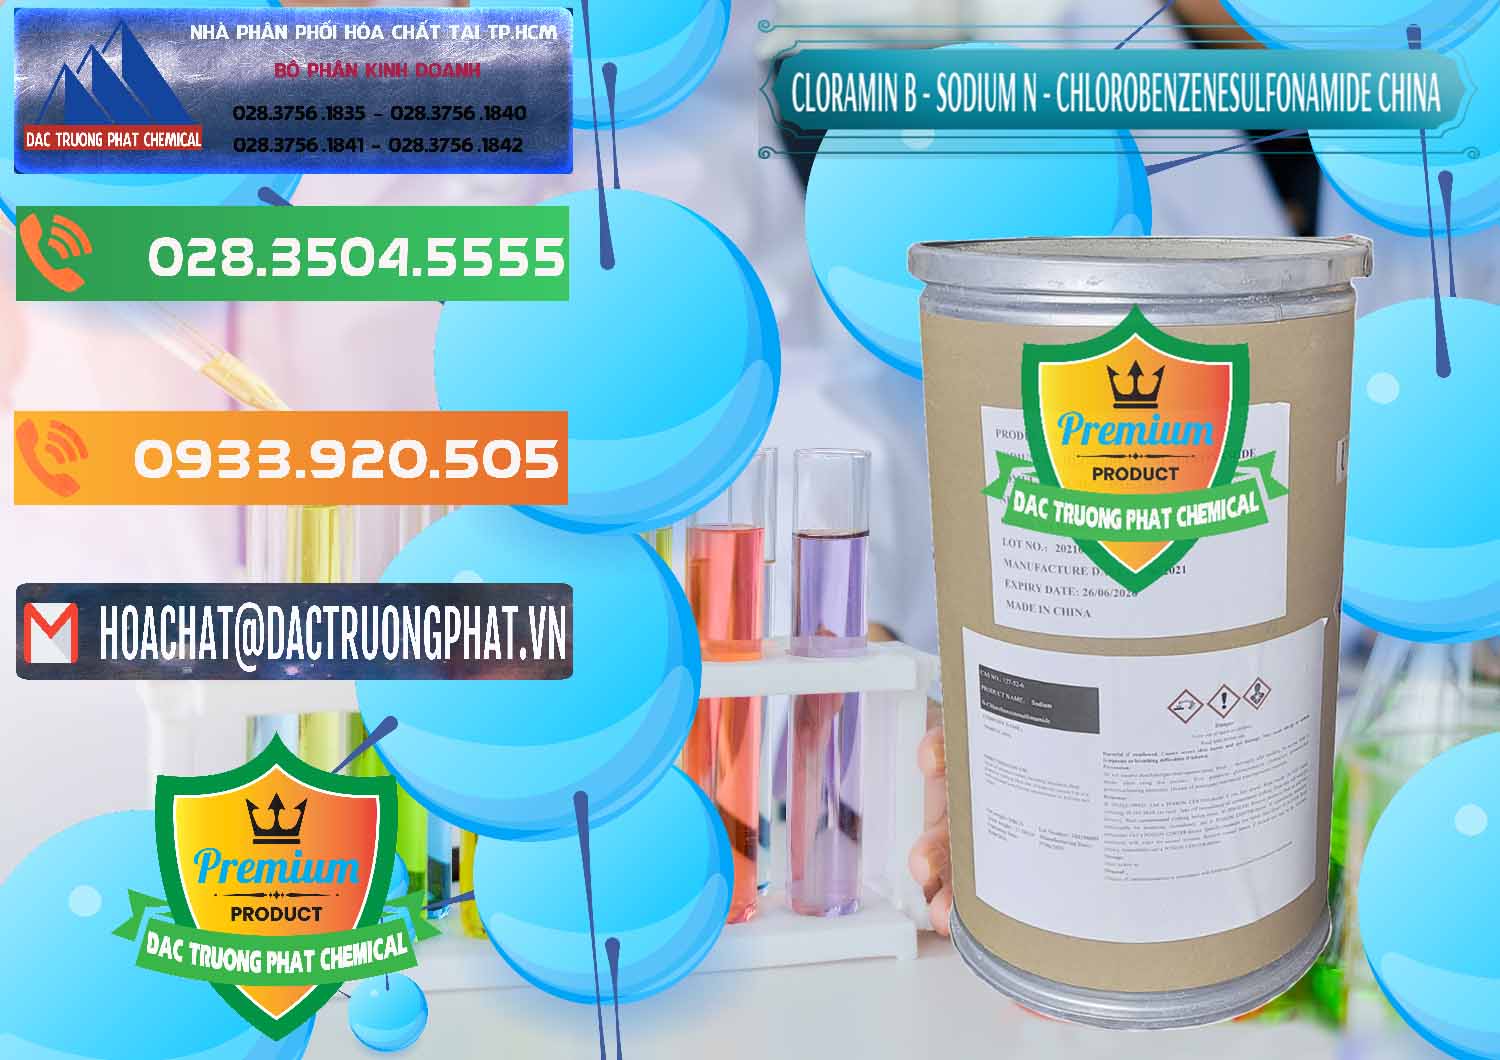 Công ty nhập khẩu - bán Cloramin B Khử Trùng, Diệt Khuẩn Trung Quốc China - 0298 - Nơi bán - cung cấp hóa chất tại TP.HCM - hoachatxulynuoc.com.vn